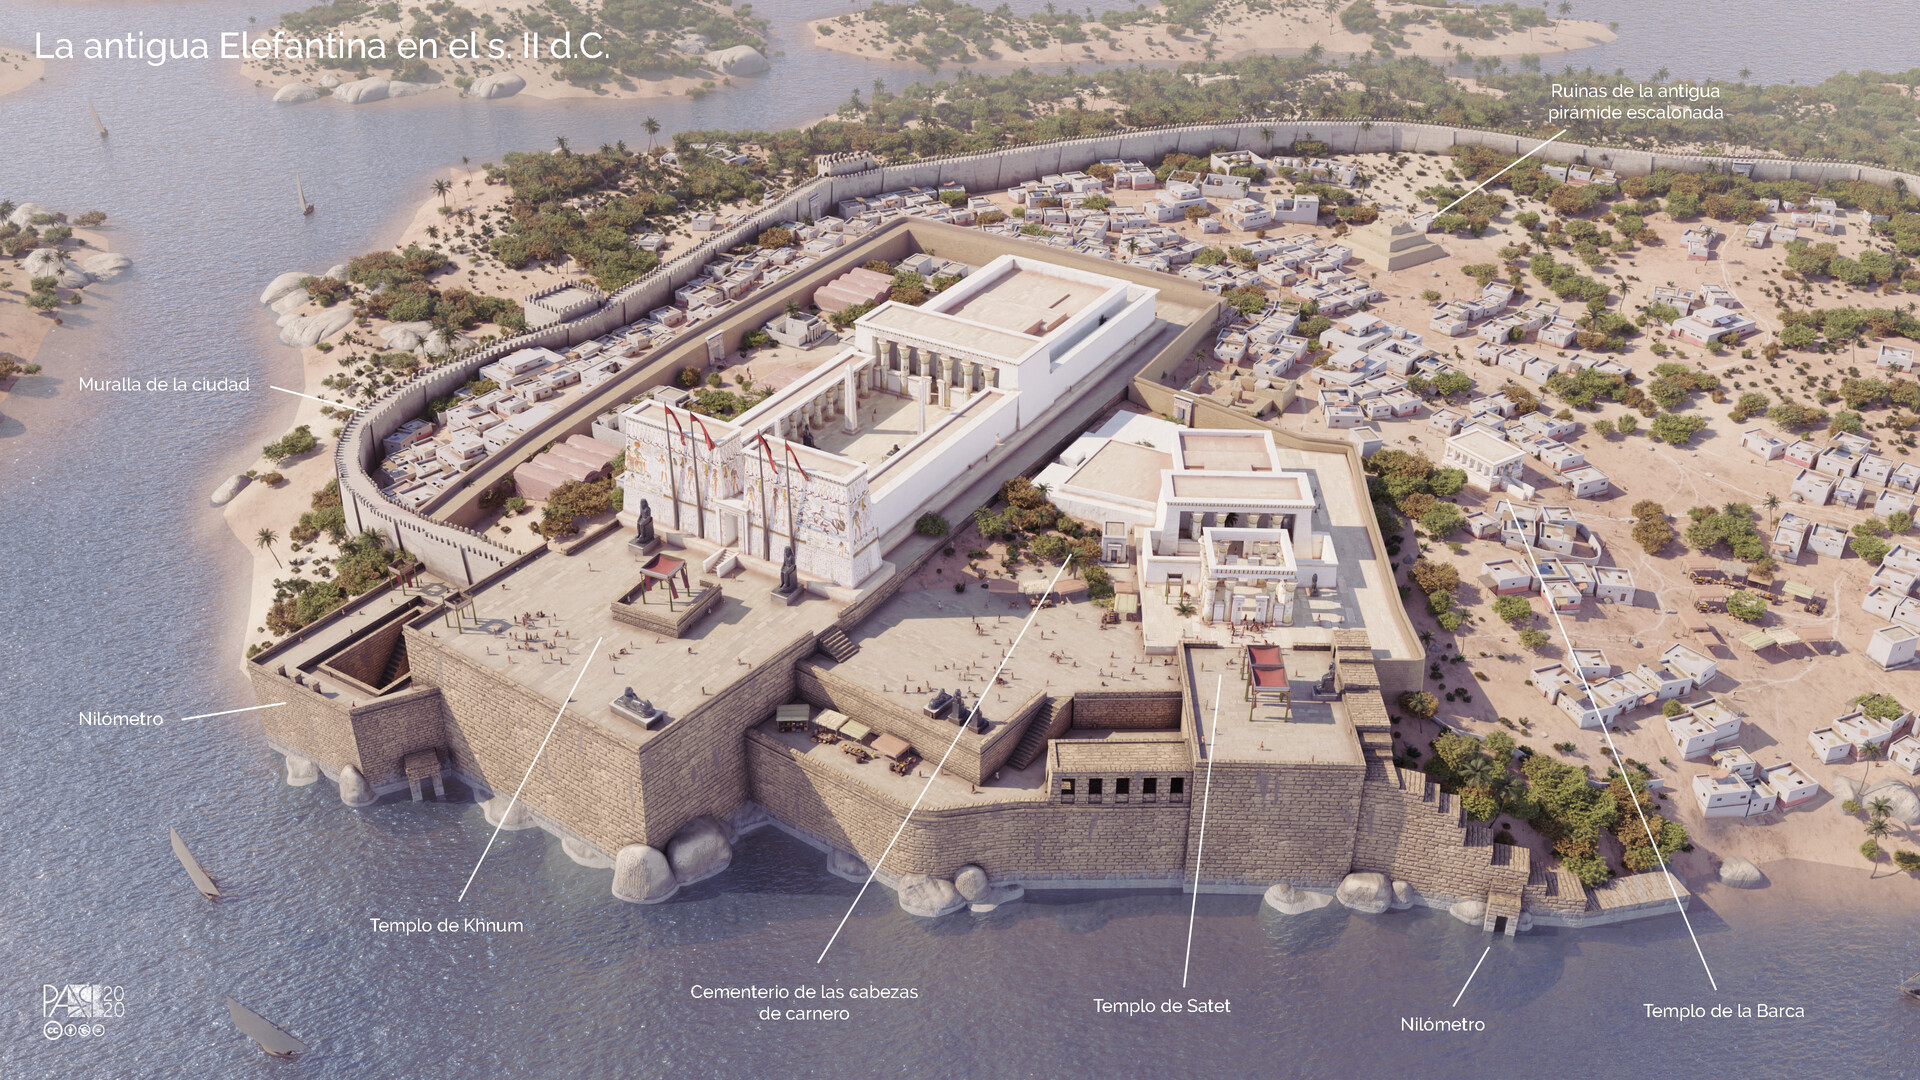 Recreación 3D de la ciudad egipcia de Elefantina (Egipto) en el s. II d.C.